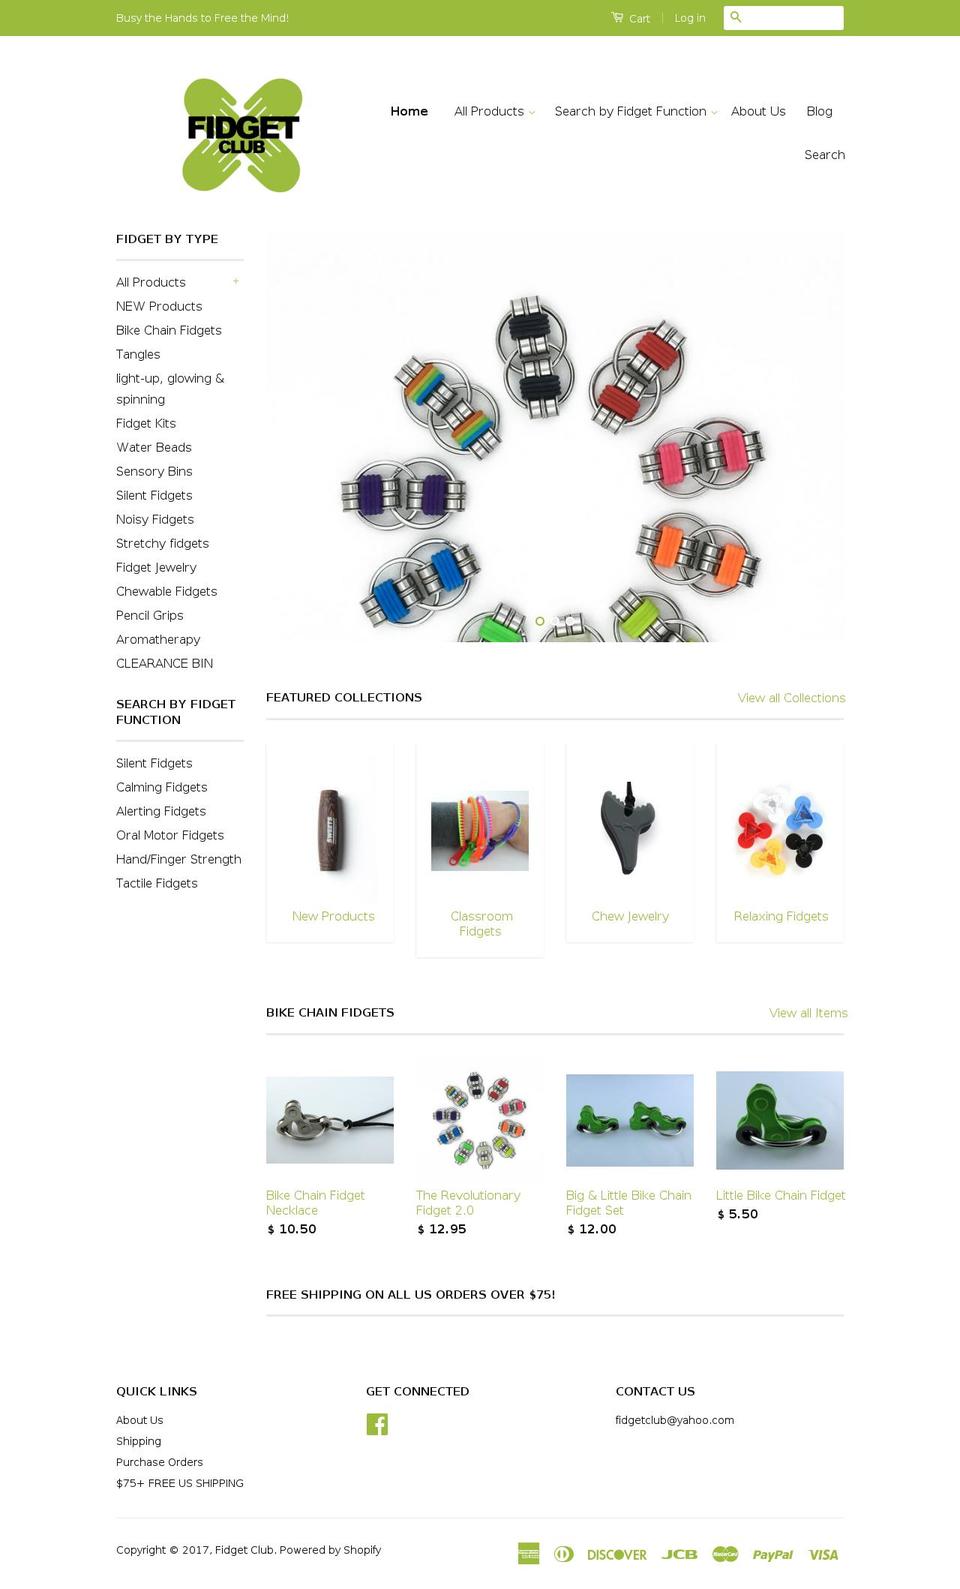 fidgetclub.com shopify website screenshot